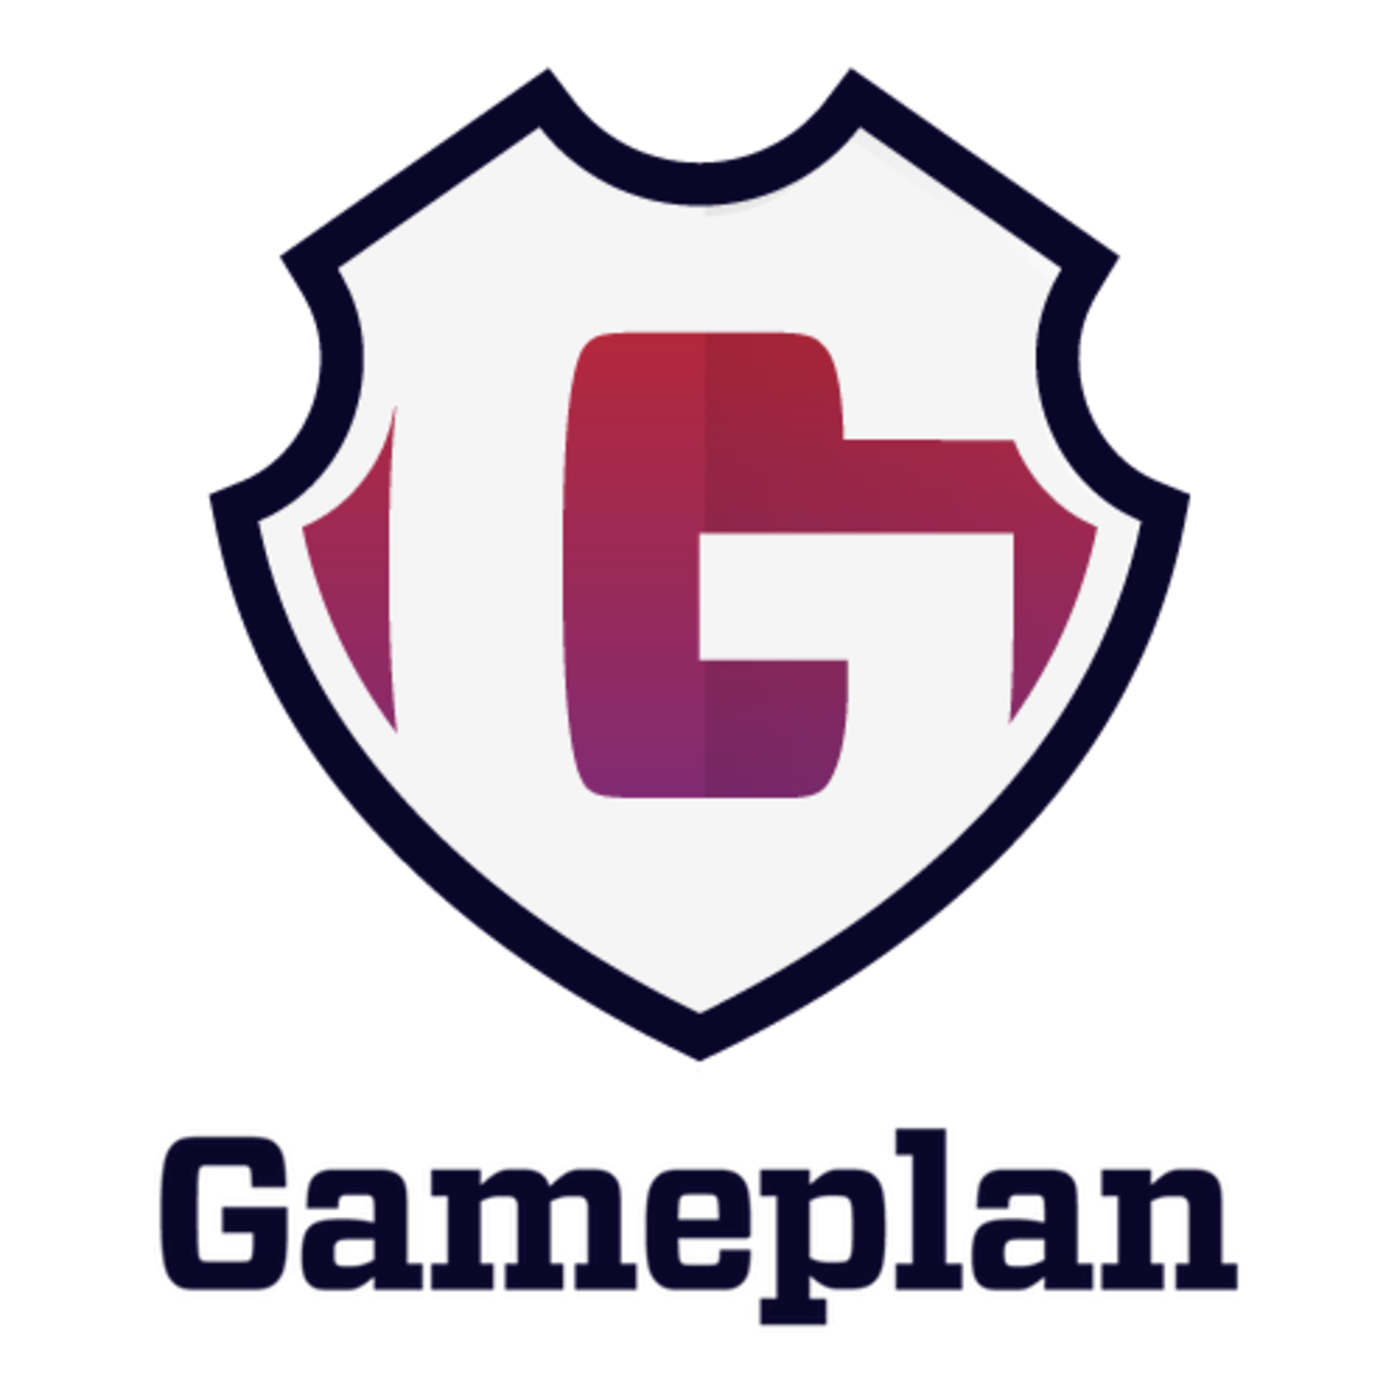 The GamePlan